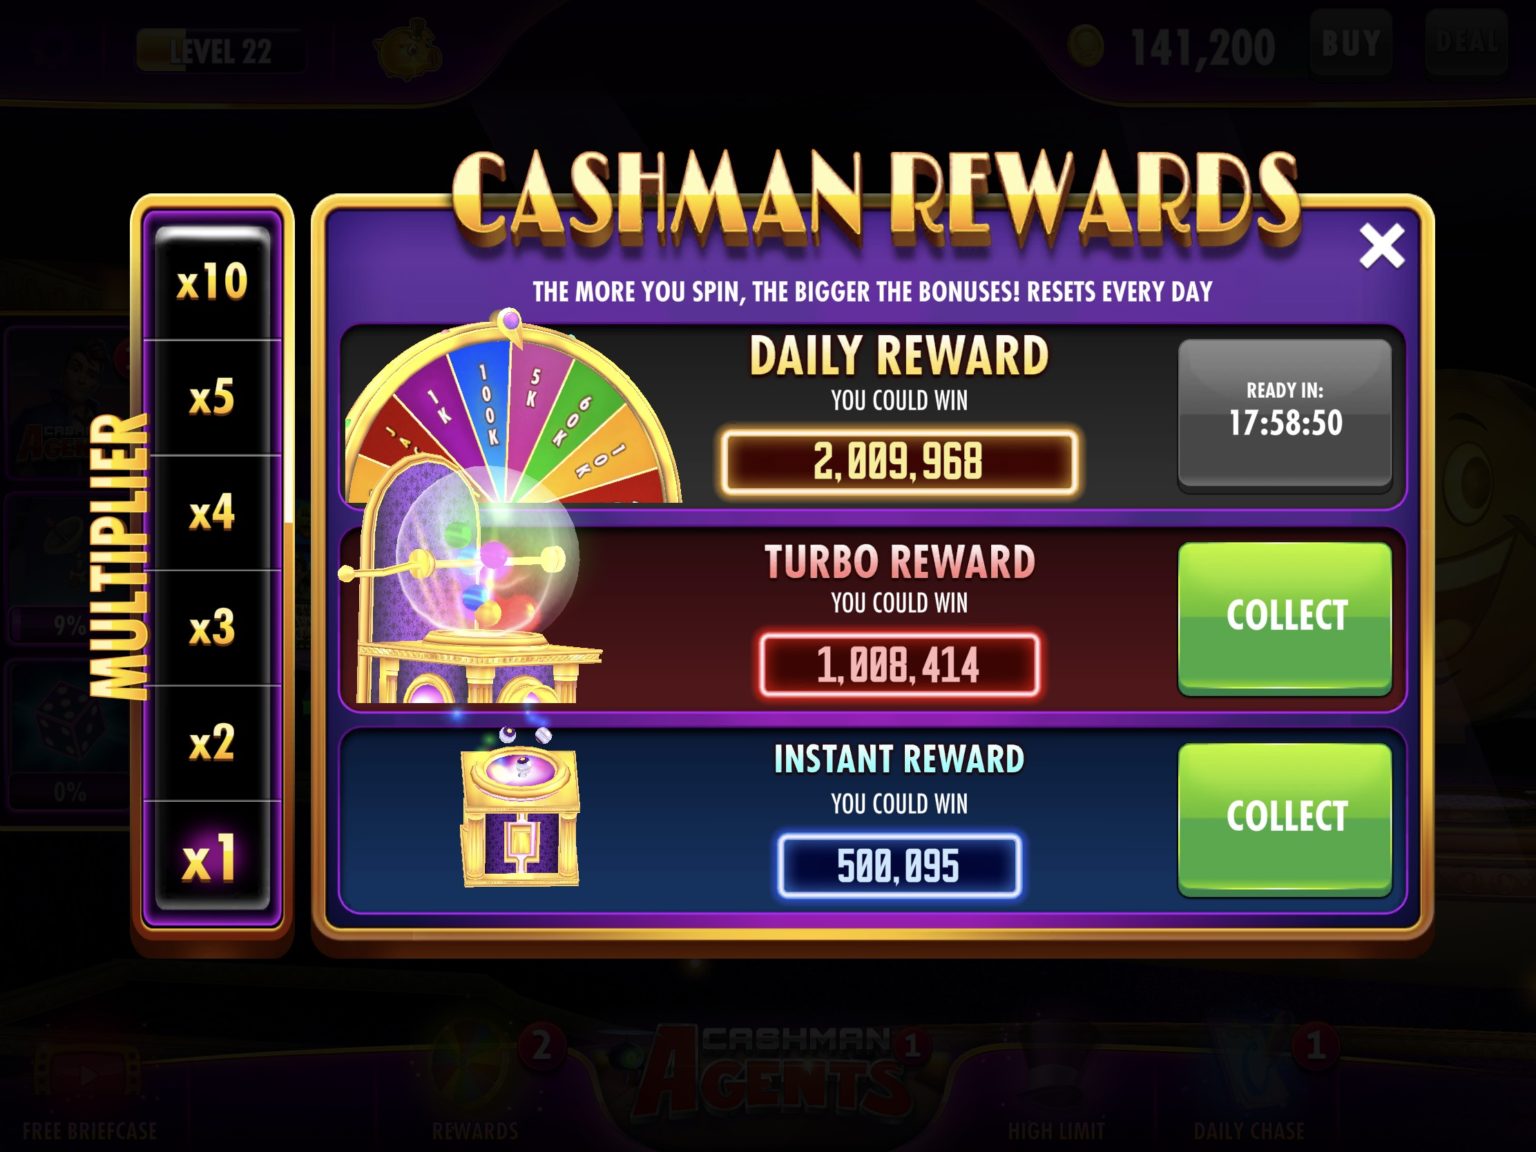 cashman casino Ã¢â‚¬âœ free slots hack tool